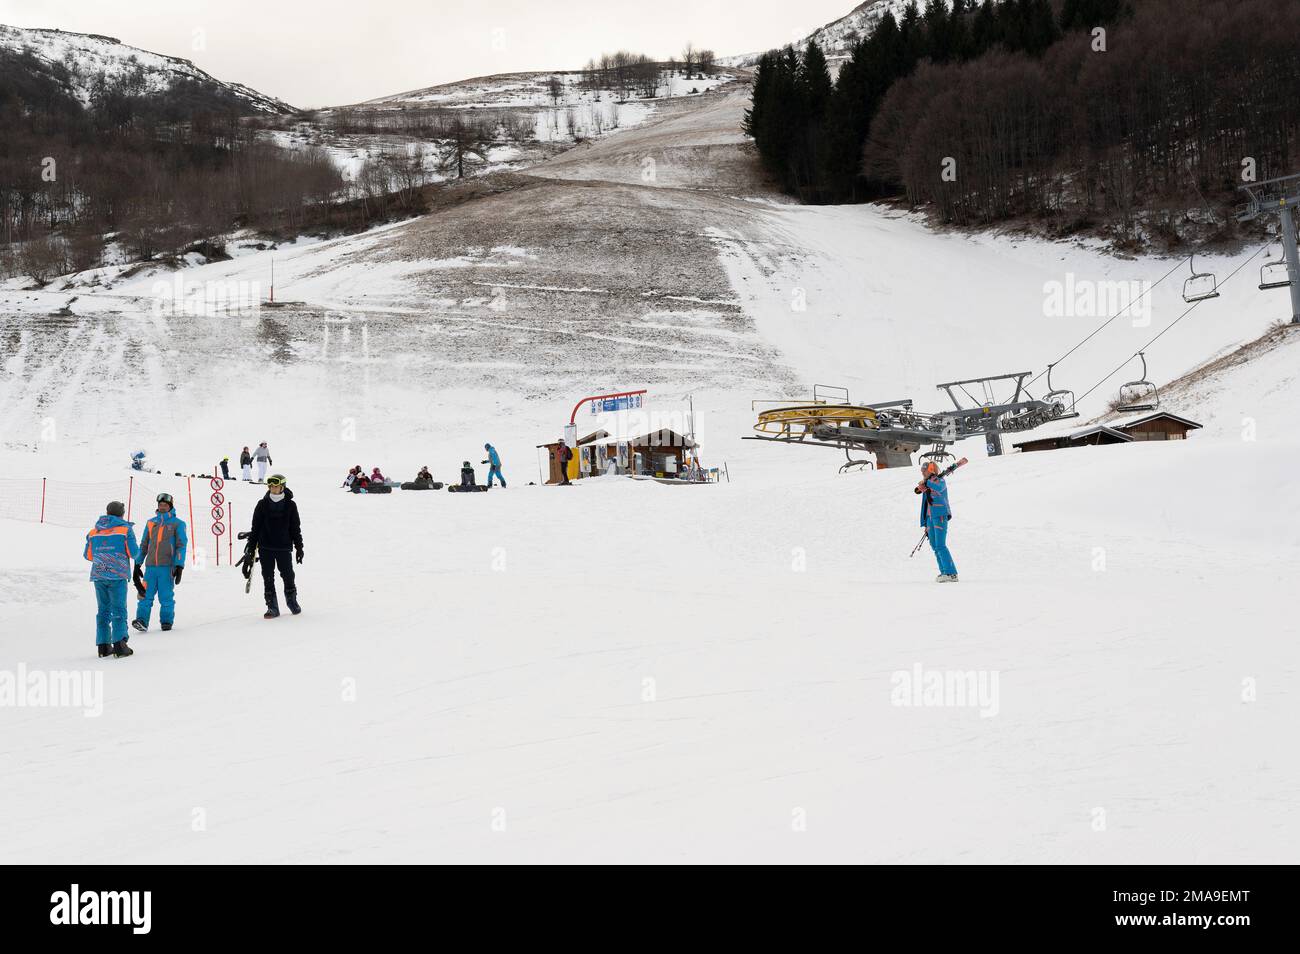 Cuota 1400, Limone Piemonte (Cuneo), Italia. 19th de enero de 2023. La ausencia casi total de nevadas en los Alpes piamonteses ha impedido que muchas estaciones de esquí abran sus instalaciones al público. Además, las altas temperaturas permiten que la nieve artificial se haga en las pistas solo en ciertos días. Por esta razón el turismo en las montañas ha disminuido drásticamente. Crédito: Luca Prestia / Alamy Live News Foto de stock